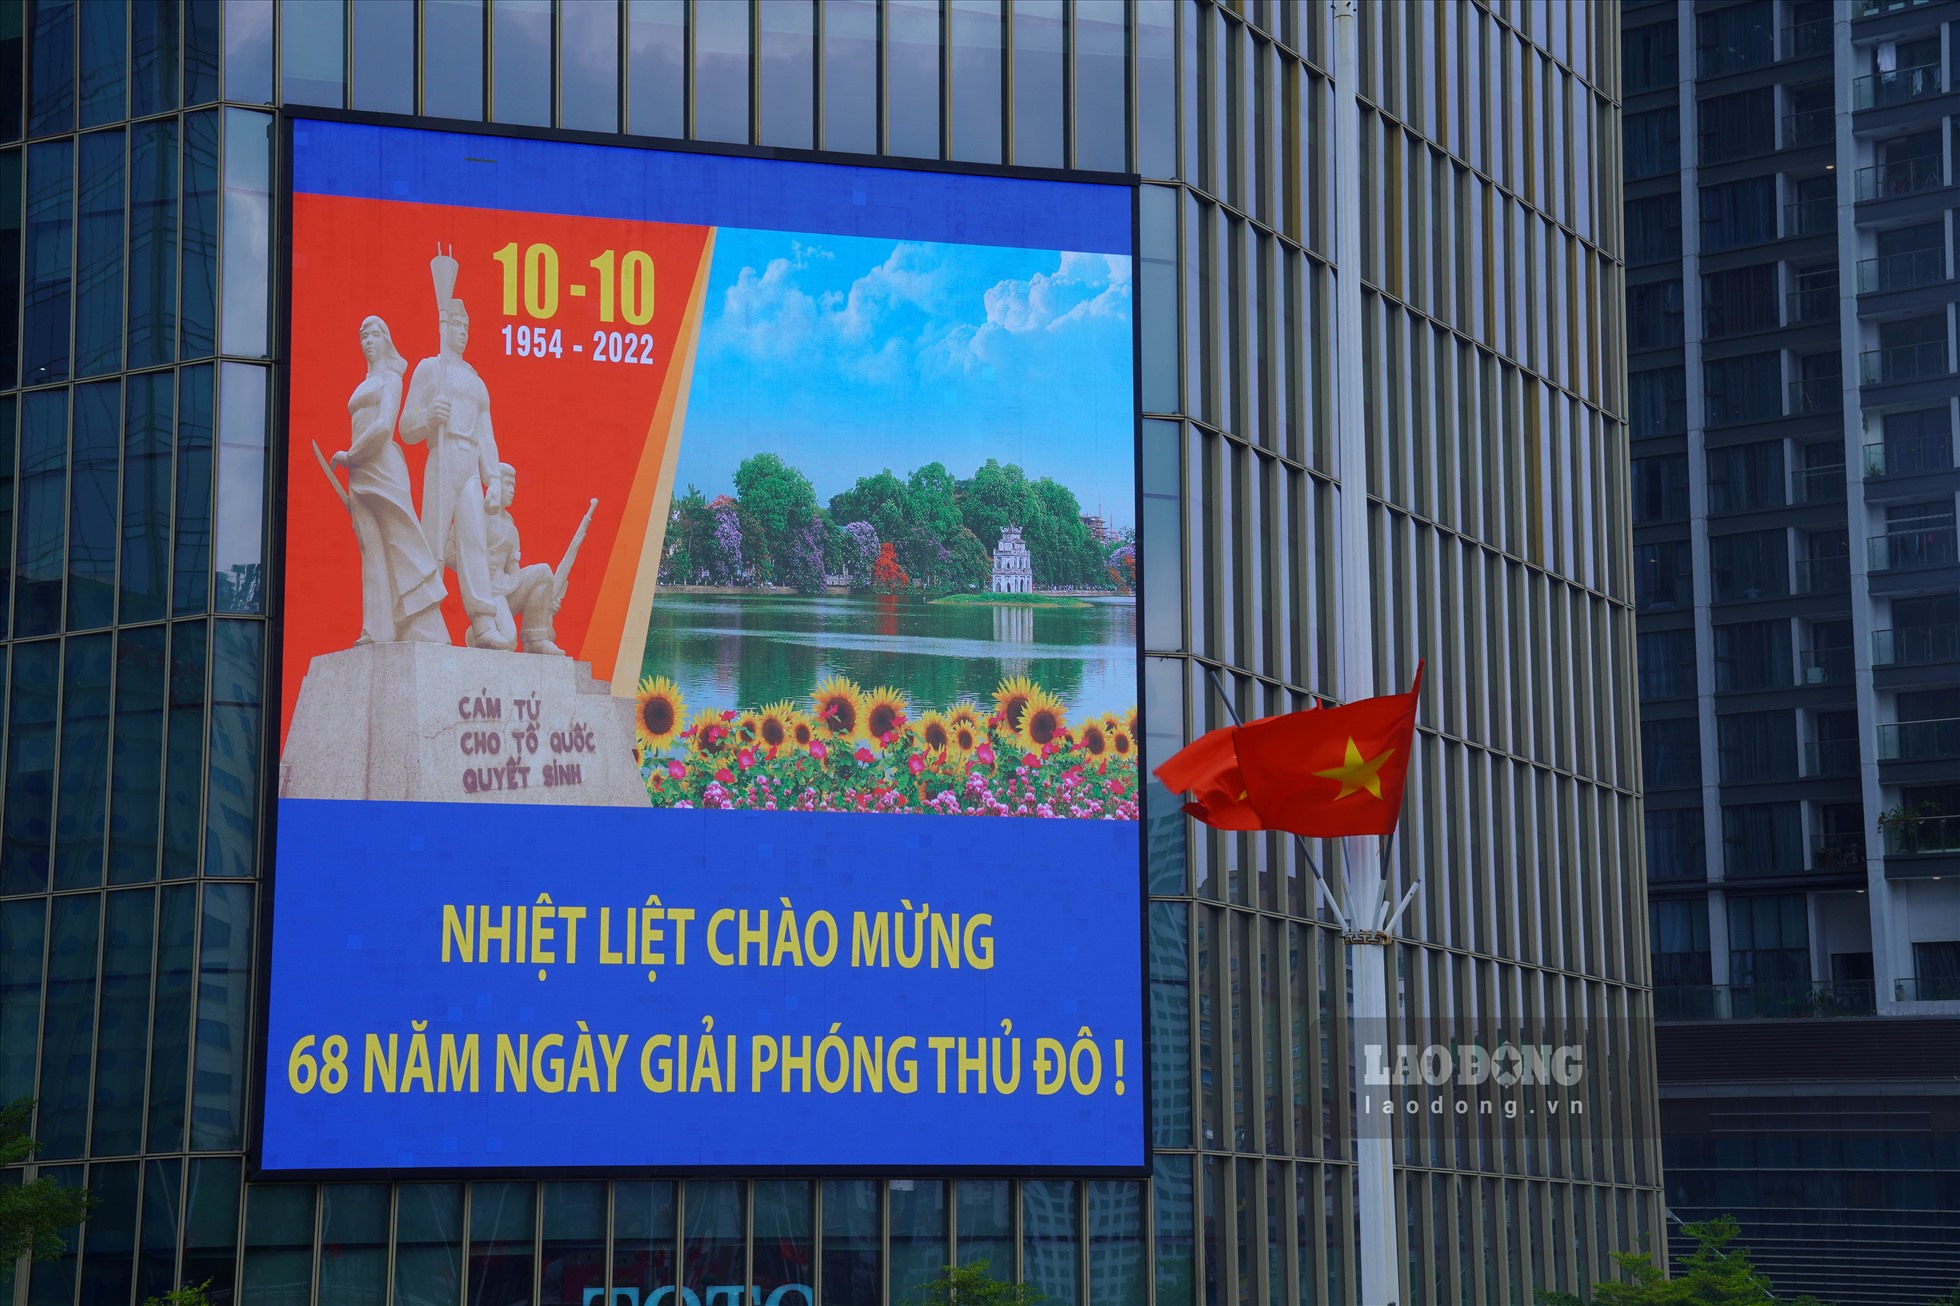 Nhiều tòa nhà được trang hoàng bởi những tấm pano kích thước lớn chào đón ngày giải phóng Thủ đô.